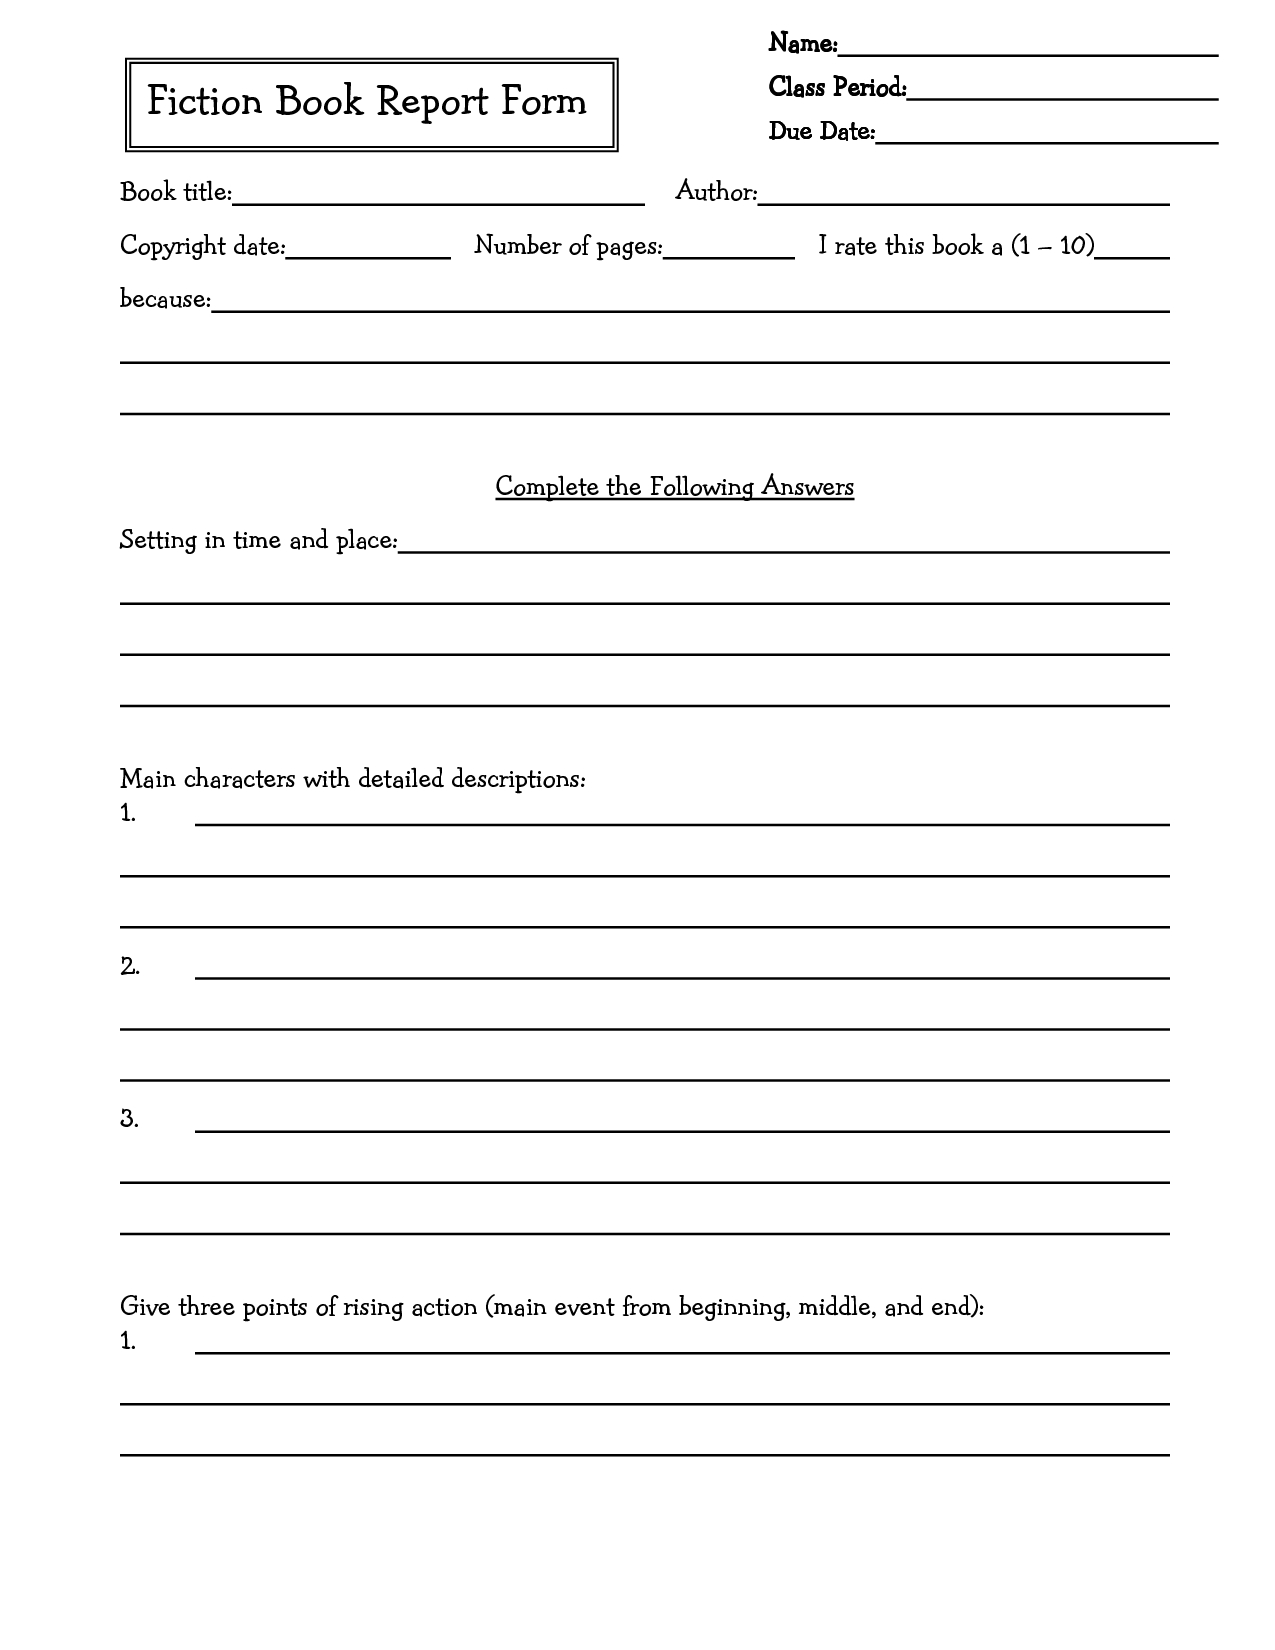 10 Unique 5Th Grade Book Report Ideas middle school book report brochure 6th grade 7th grade 8th 1 2022